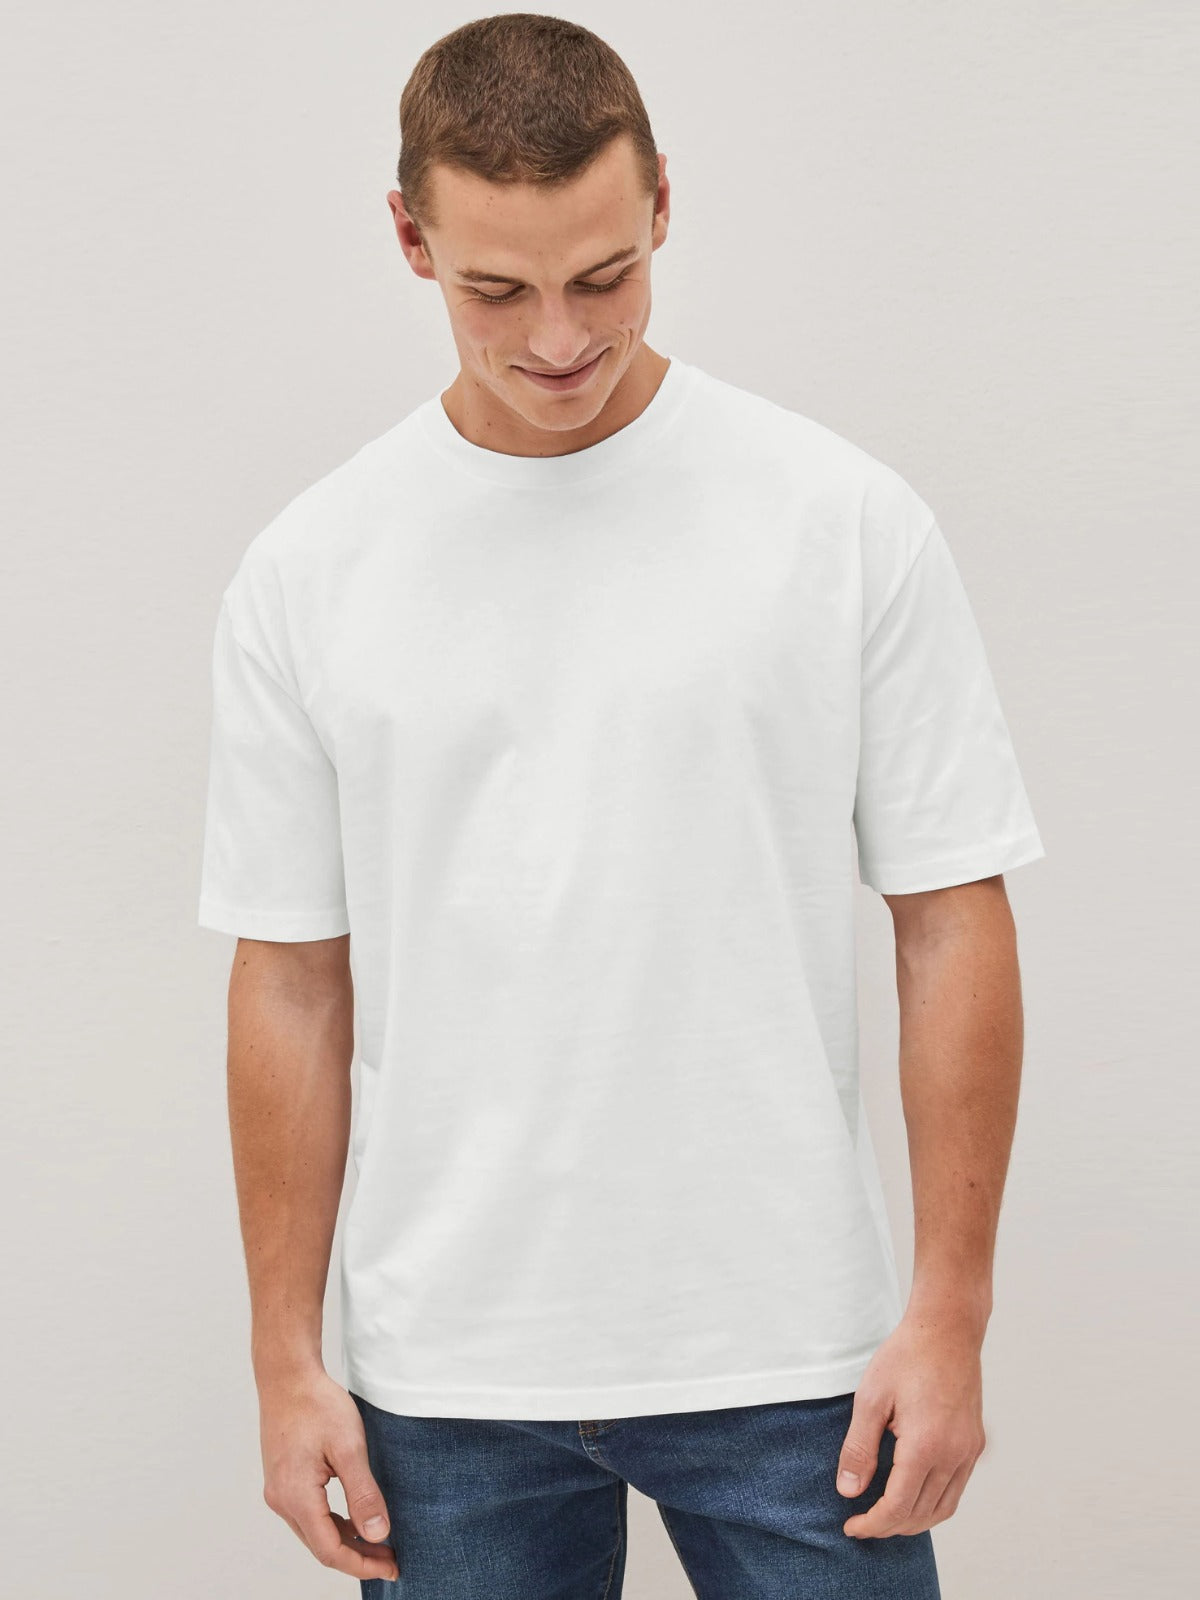 ZR white basic cotton regular sleeves T-Shirt (00313)